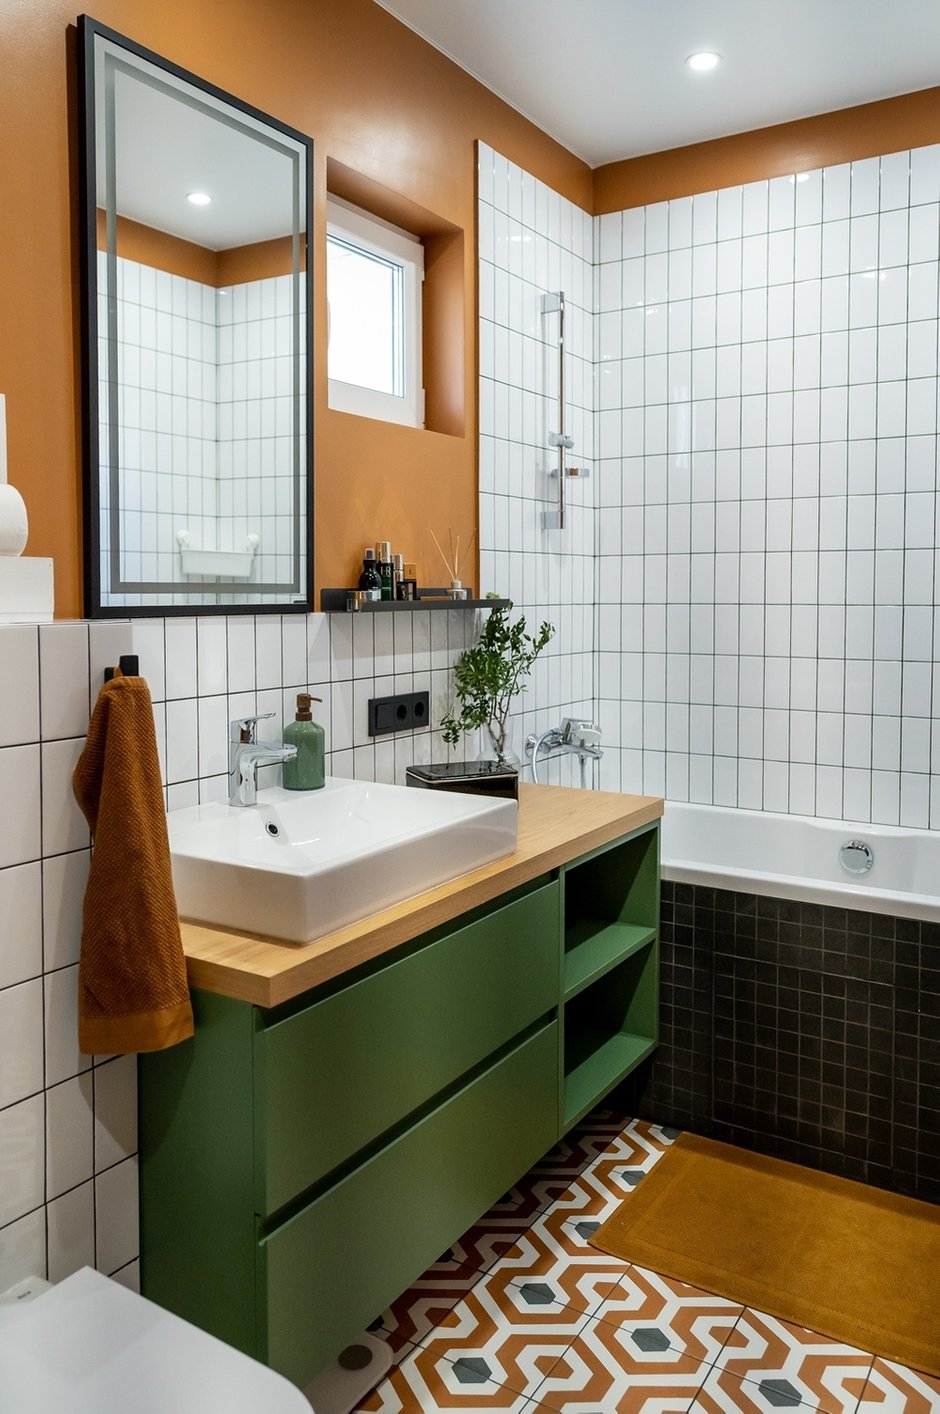 Настенное покрытие в зоне туалета, ванной и душевой — керамическая плитка. Напольное покрытие — керамогранит. Пол в душевой выложен черной мозаикой, она же украшает фасад ванной. Остальное стеновое покрытие — это влагостойкая краска.